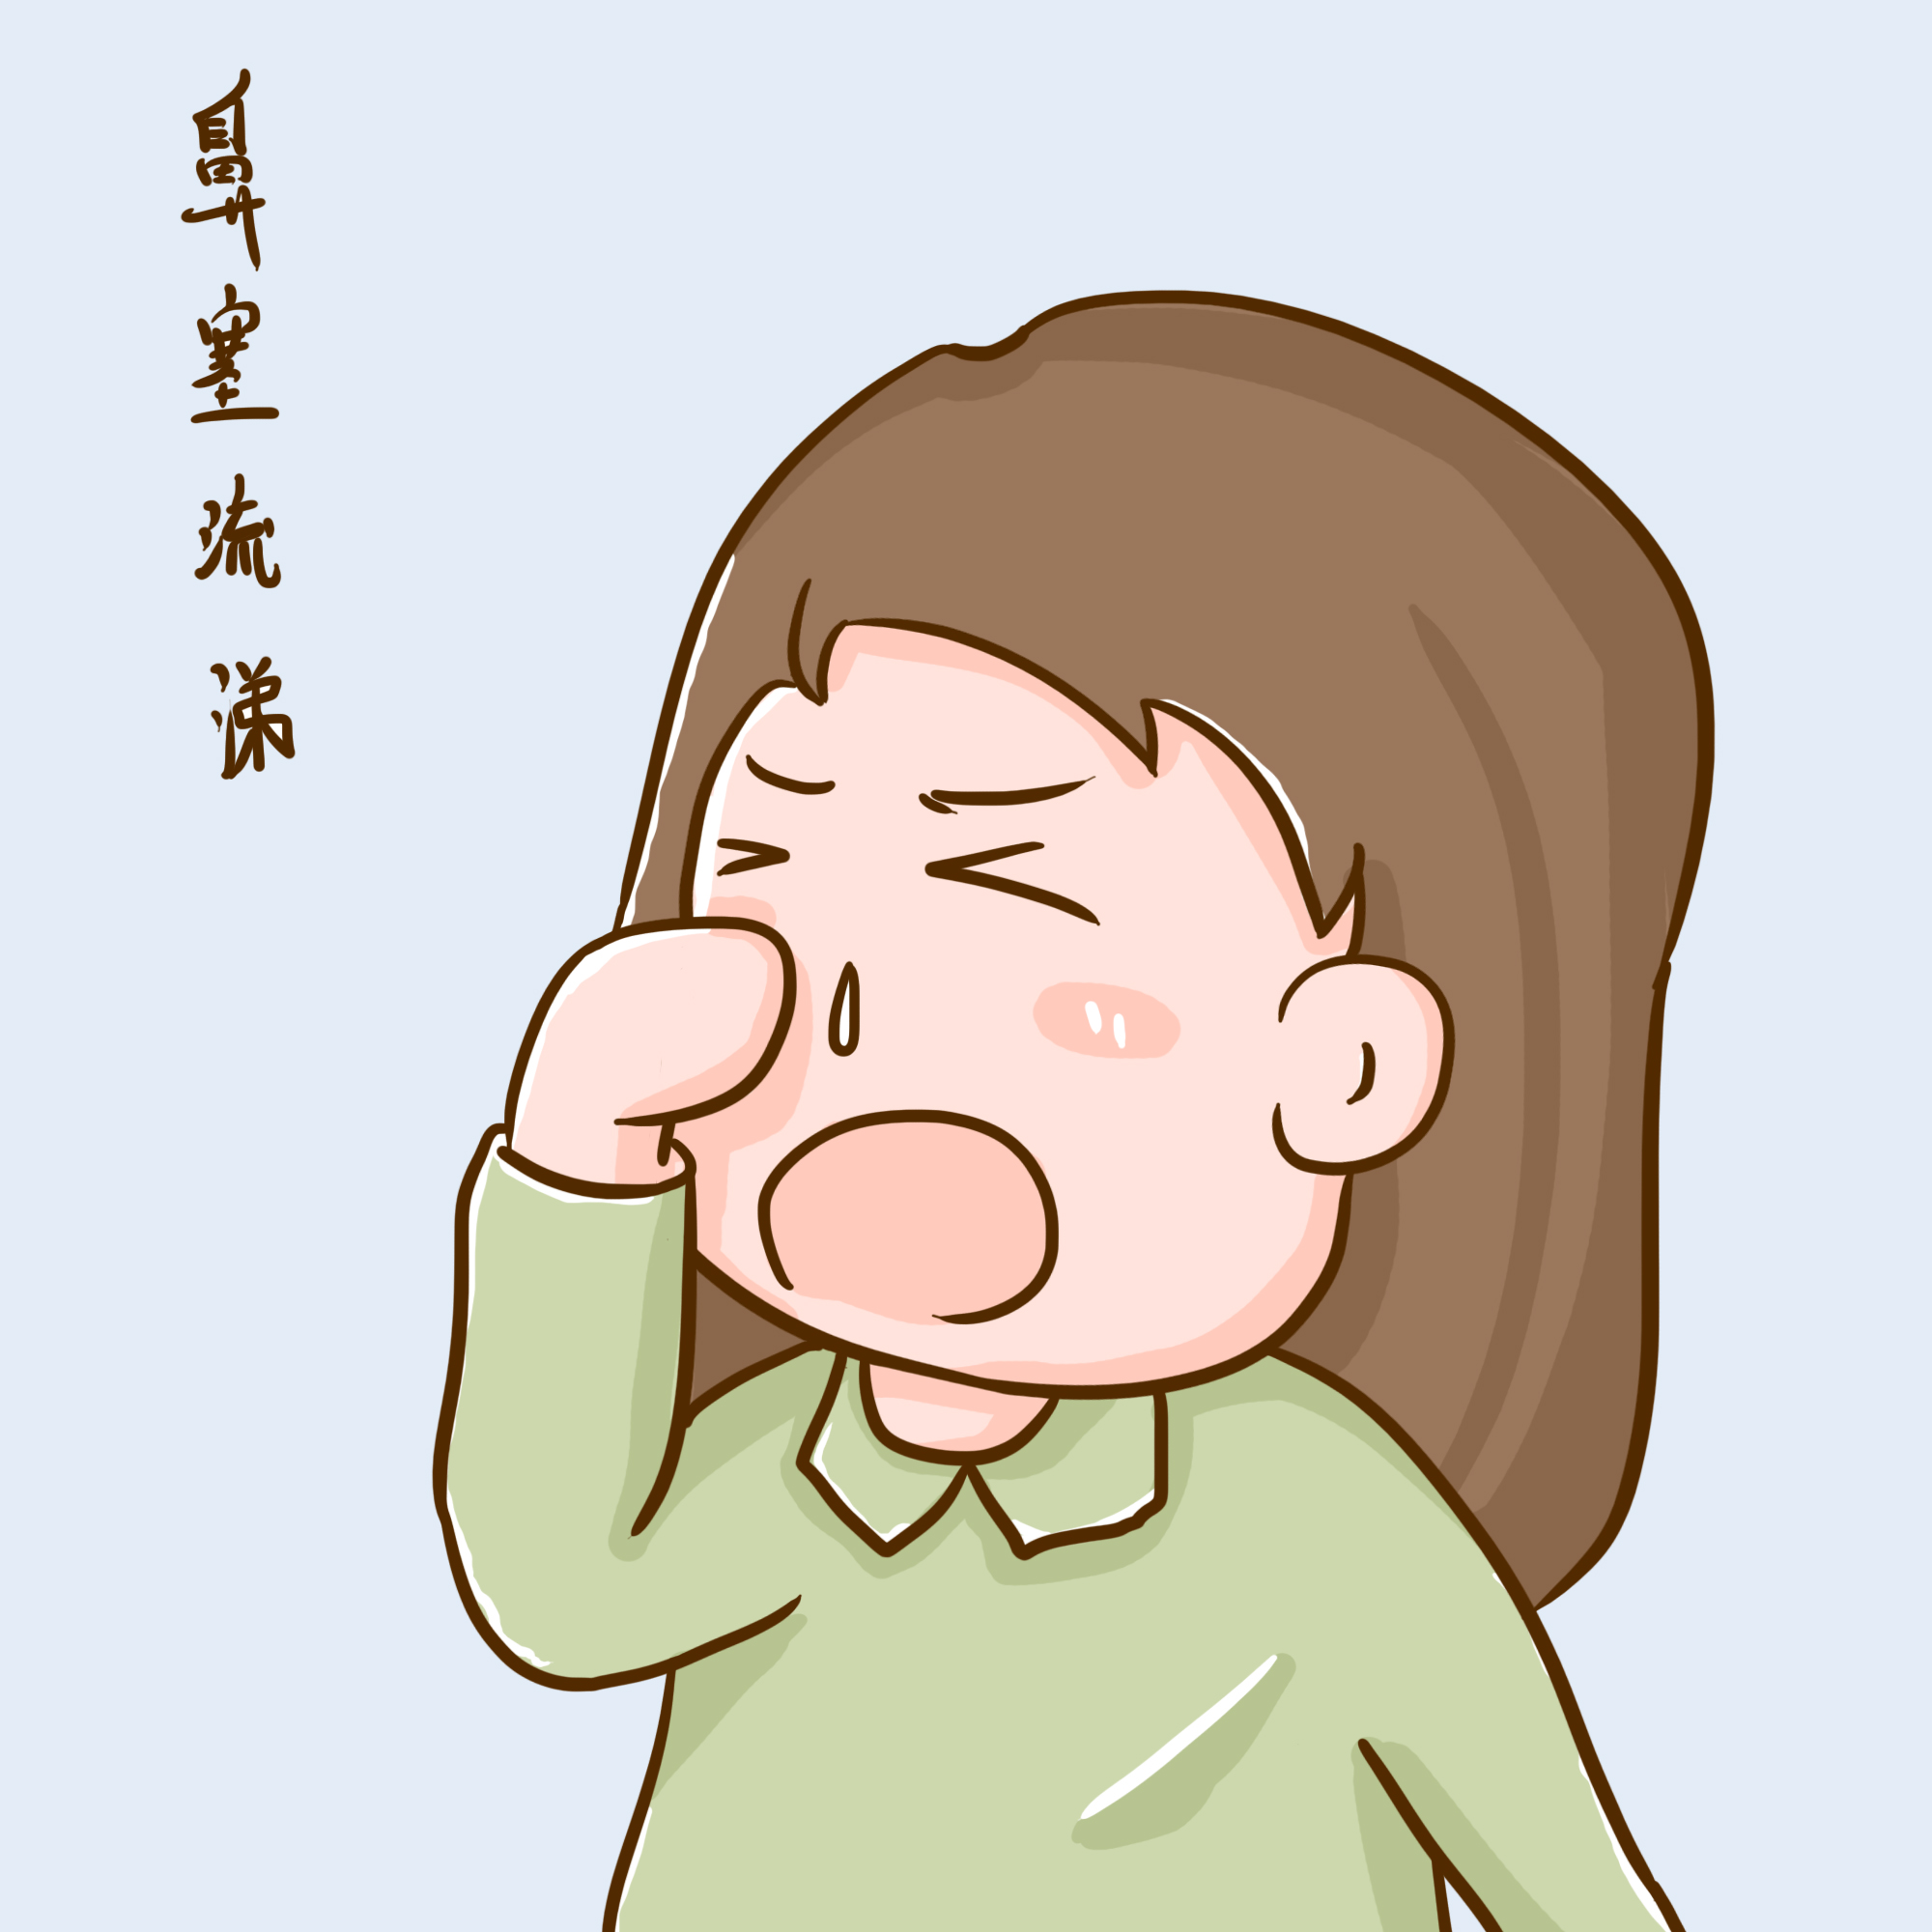 感冒咳嗽吃什么感冒药好得快？